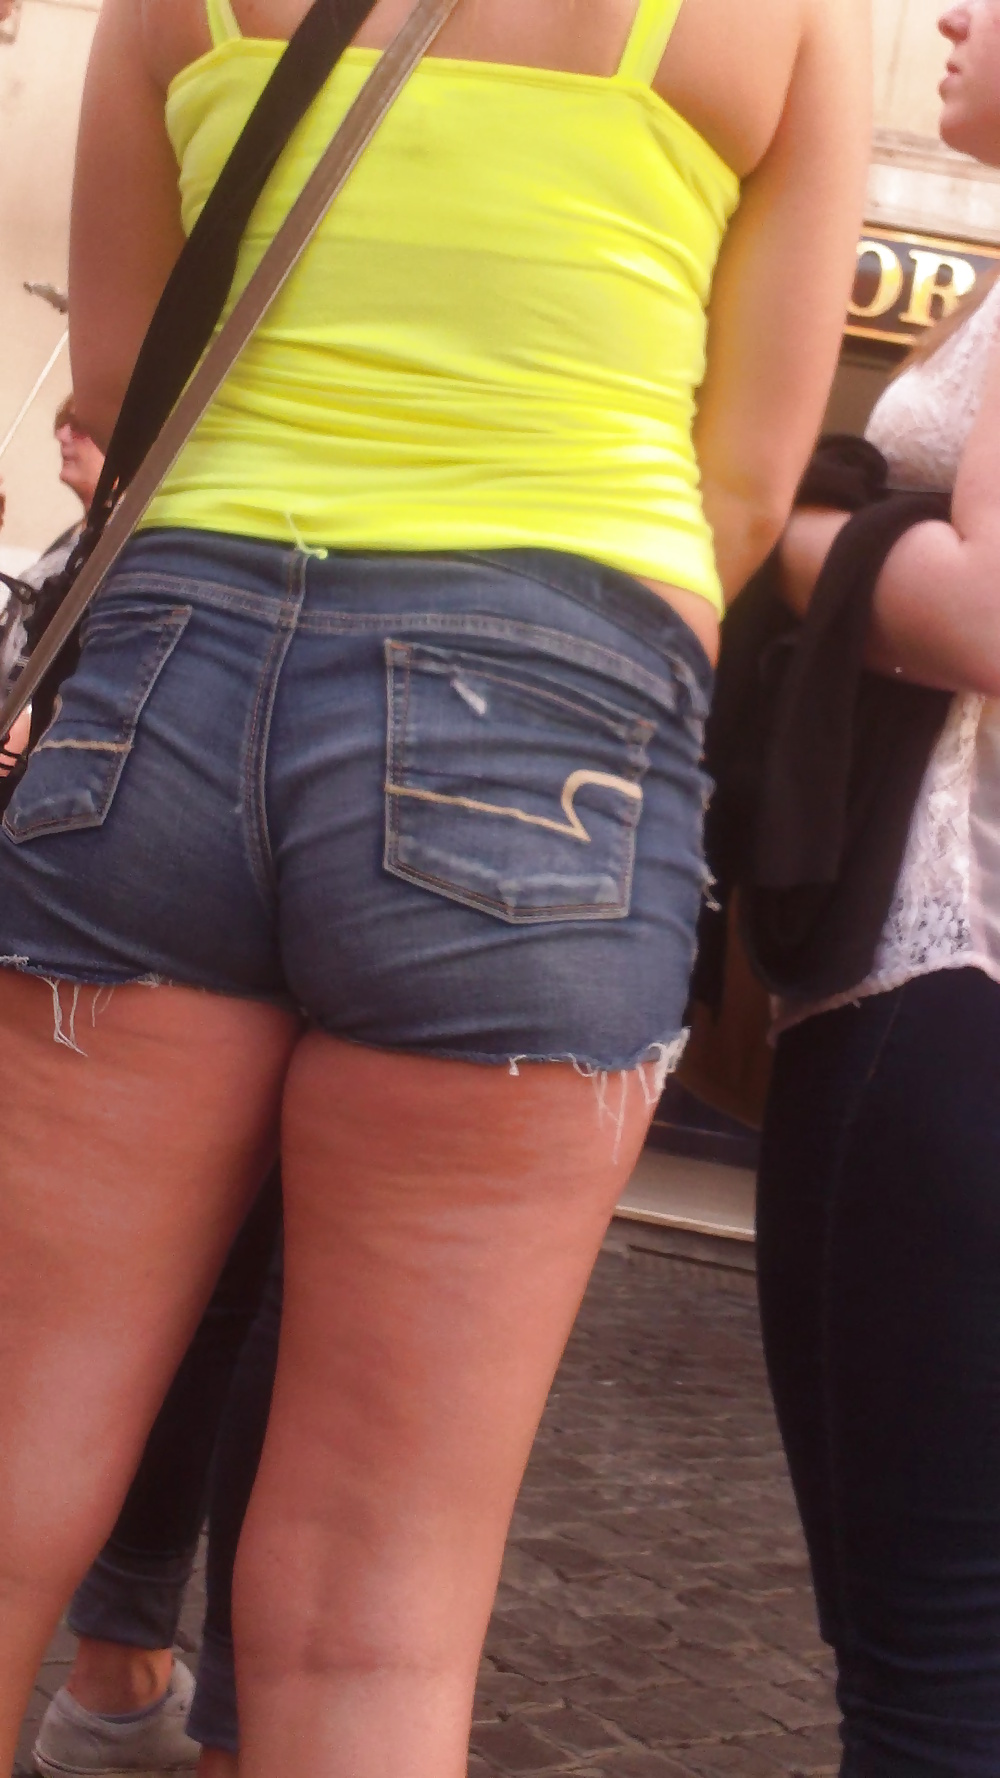 Popular teen girls ass & butt in jeans Part 6 #32010107